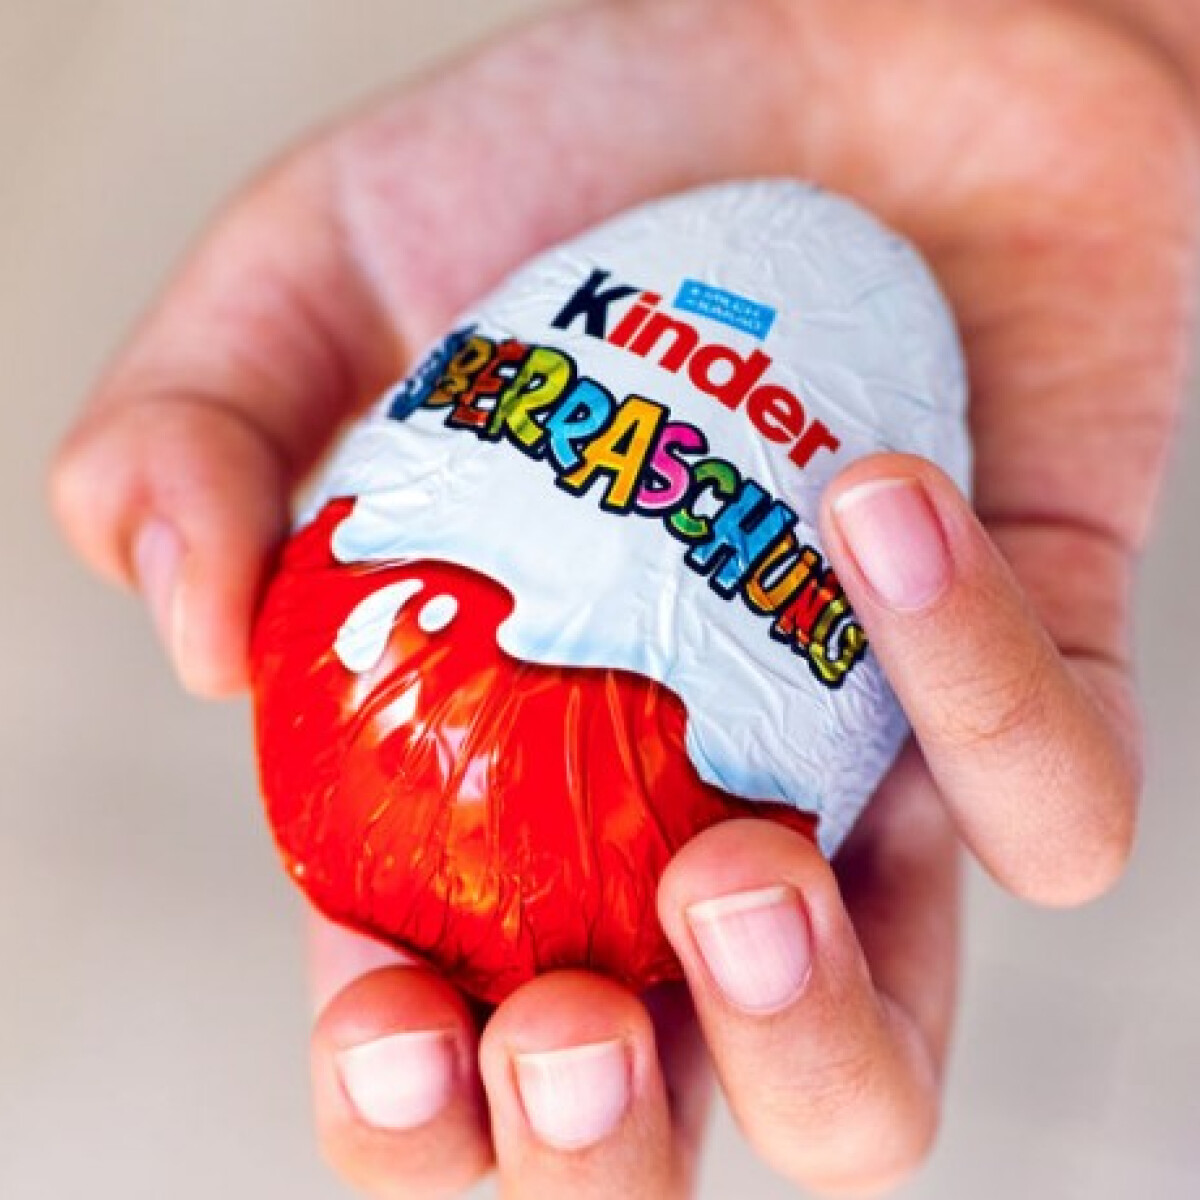 Rasszista meglepetés a Kinder-tojásban? - nagy felháborodás volt egy kis figura miatt